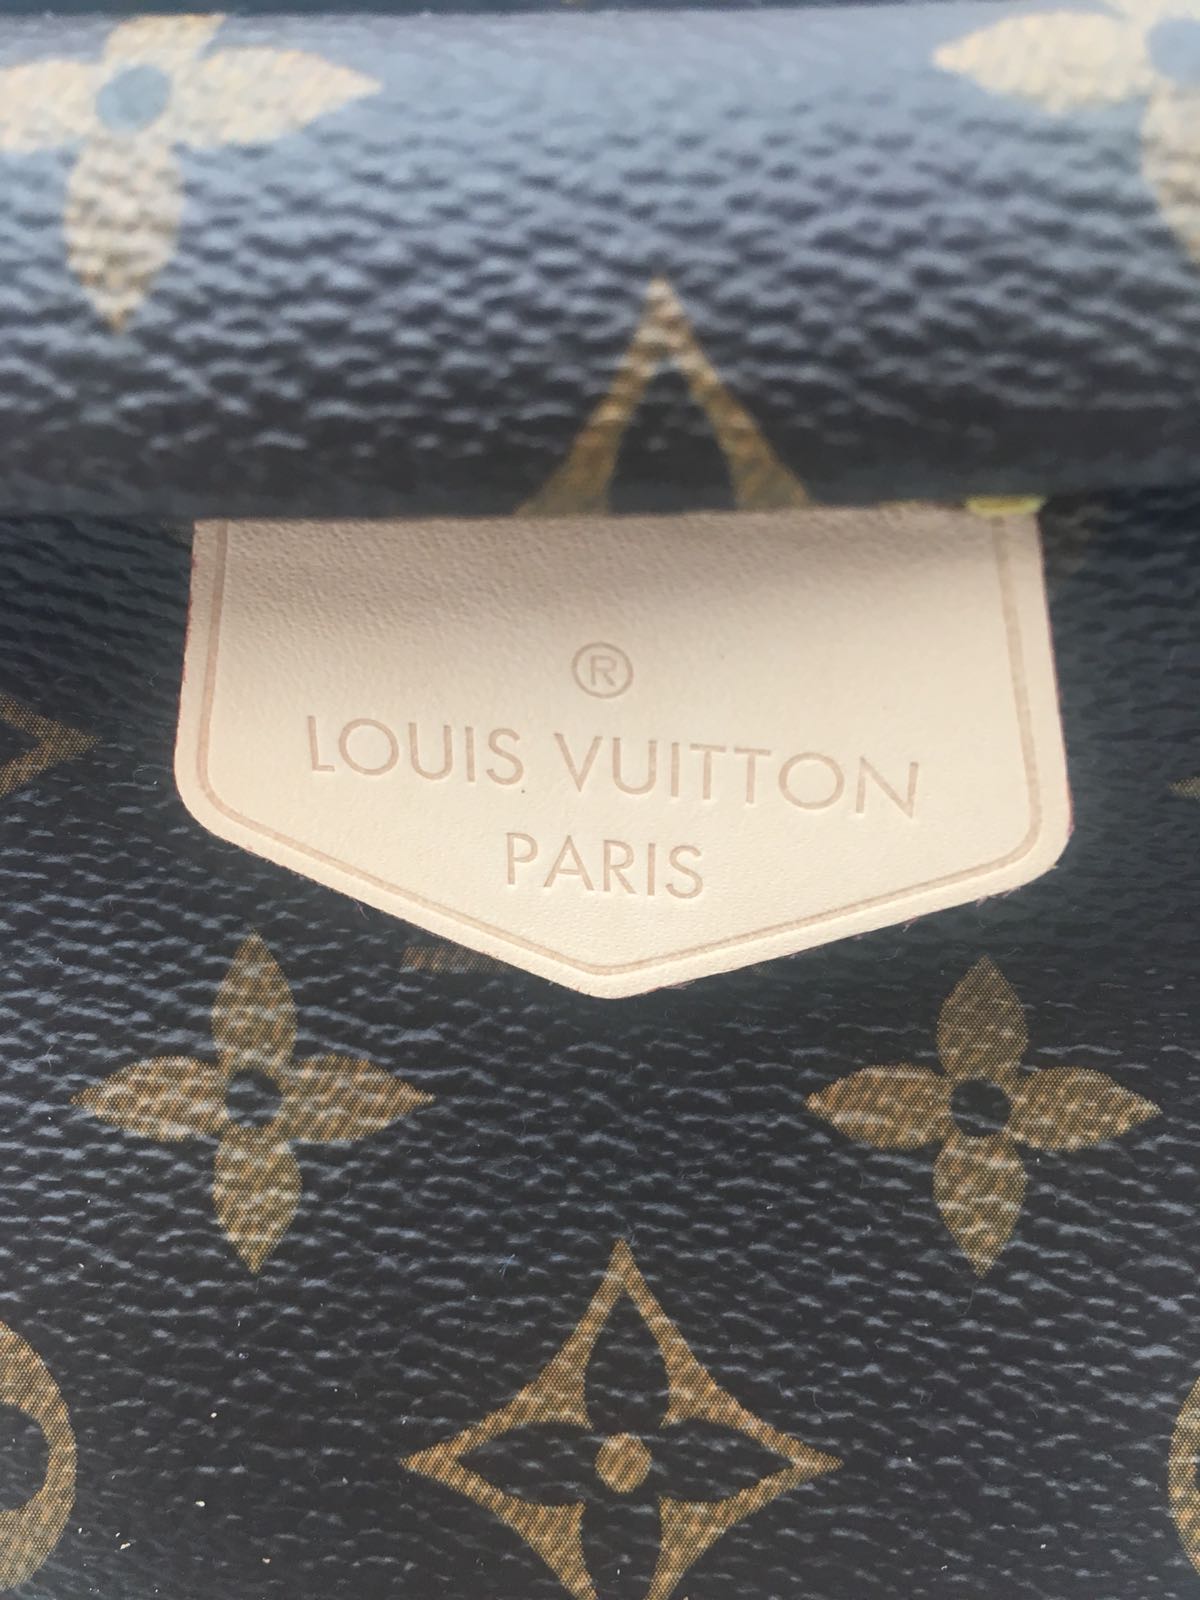 What Fits? Mini Bum Bag! : r/Louisvuitton